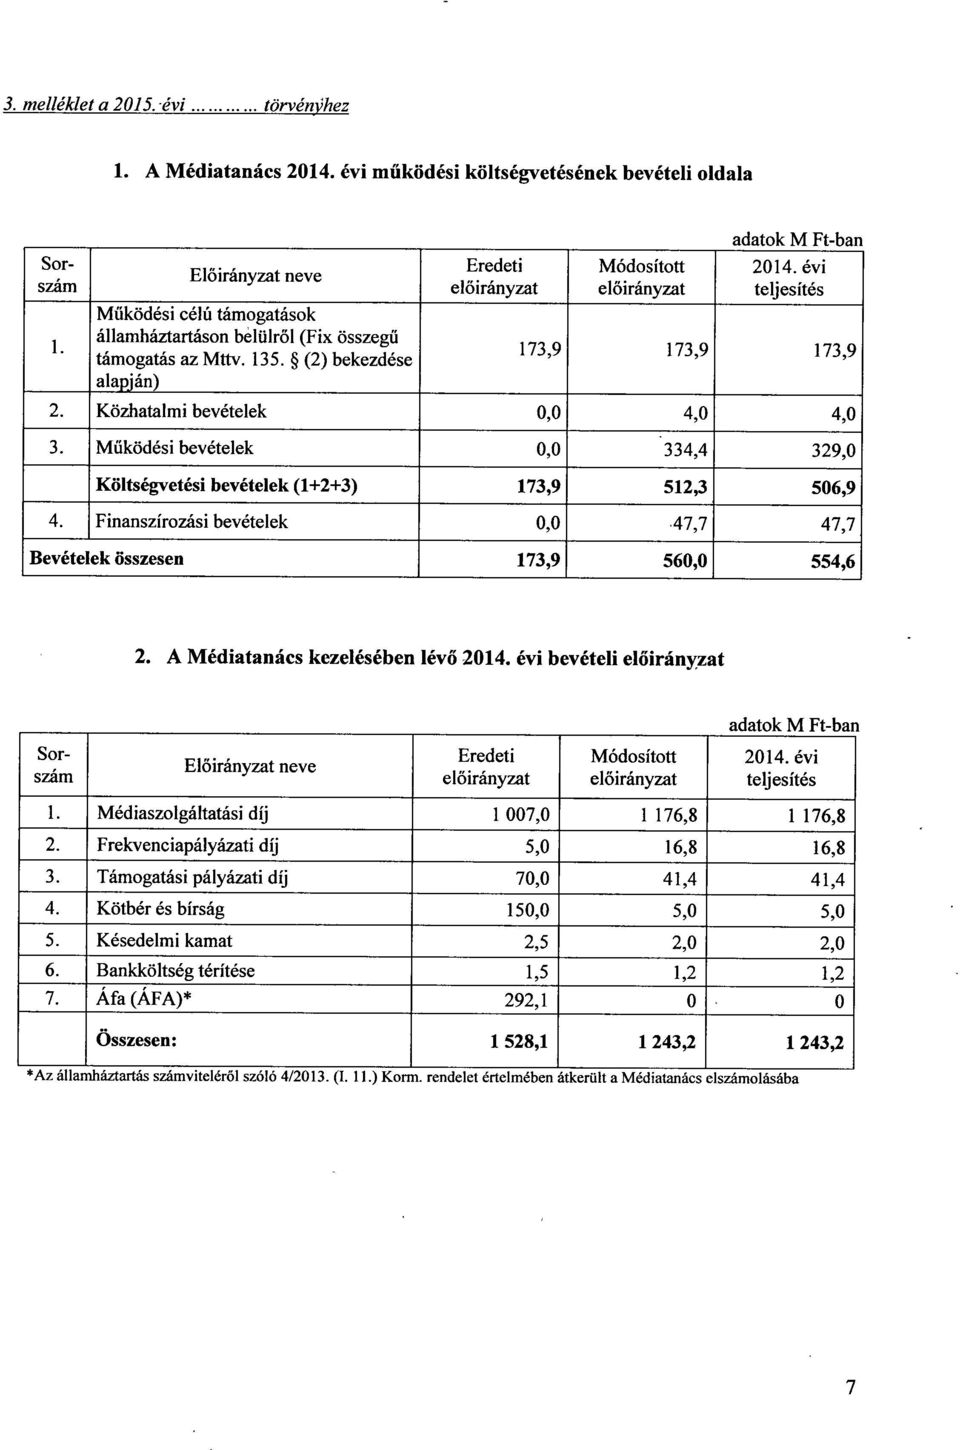 (2) bekezdés e alapján) Eredeti előirányzat Módosított előirányzat adatok M Ft-ba n 2014. évi teljesíté s 173,9 173,9 173,9 2. Közhatalmi bevételek 0,0 4,0 4,0 3.